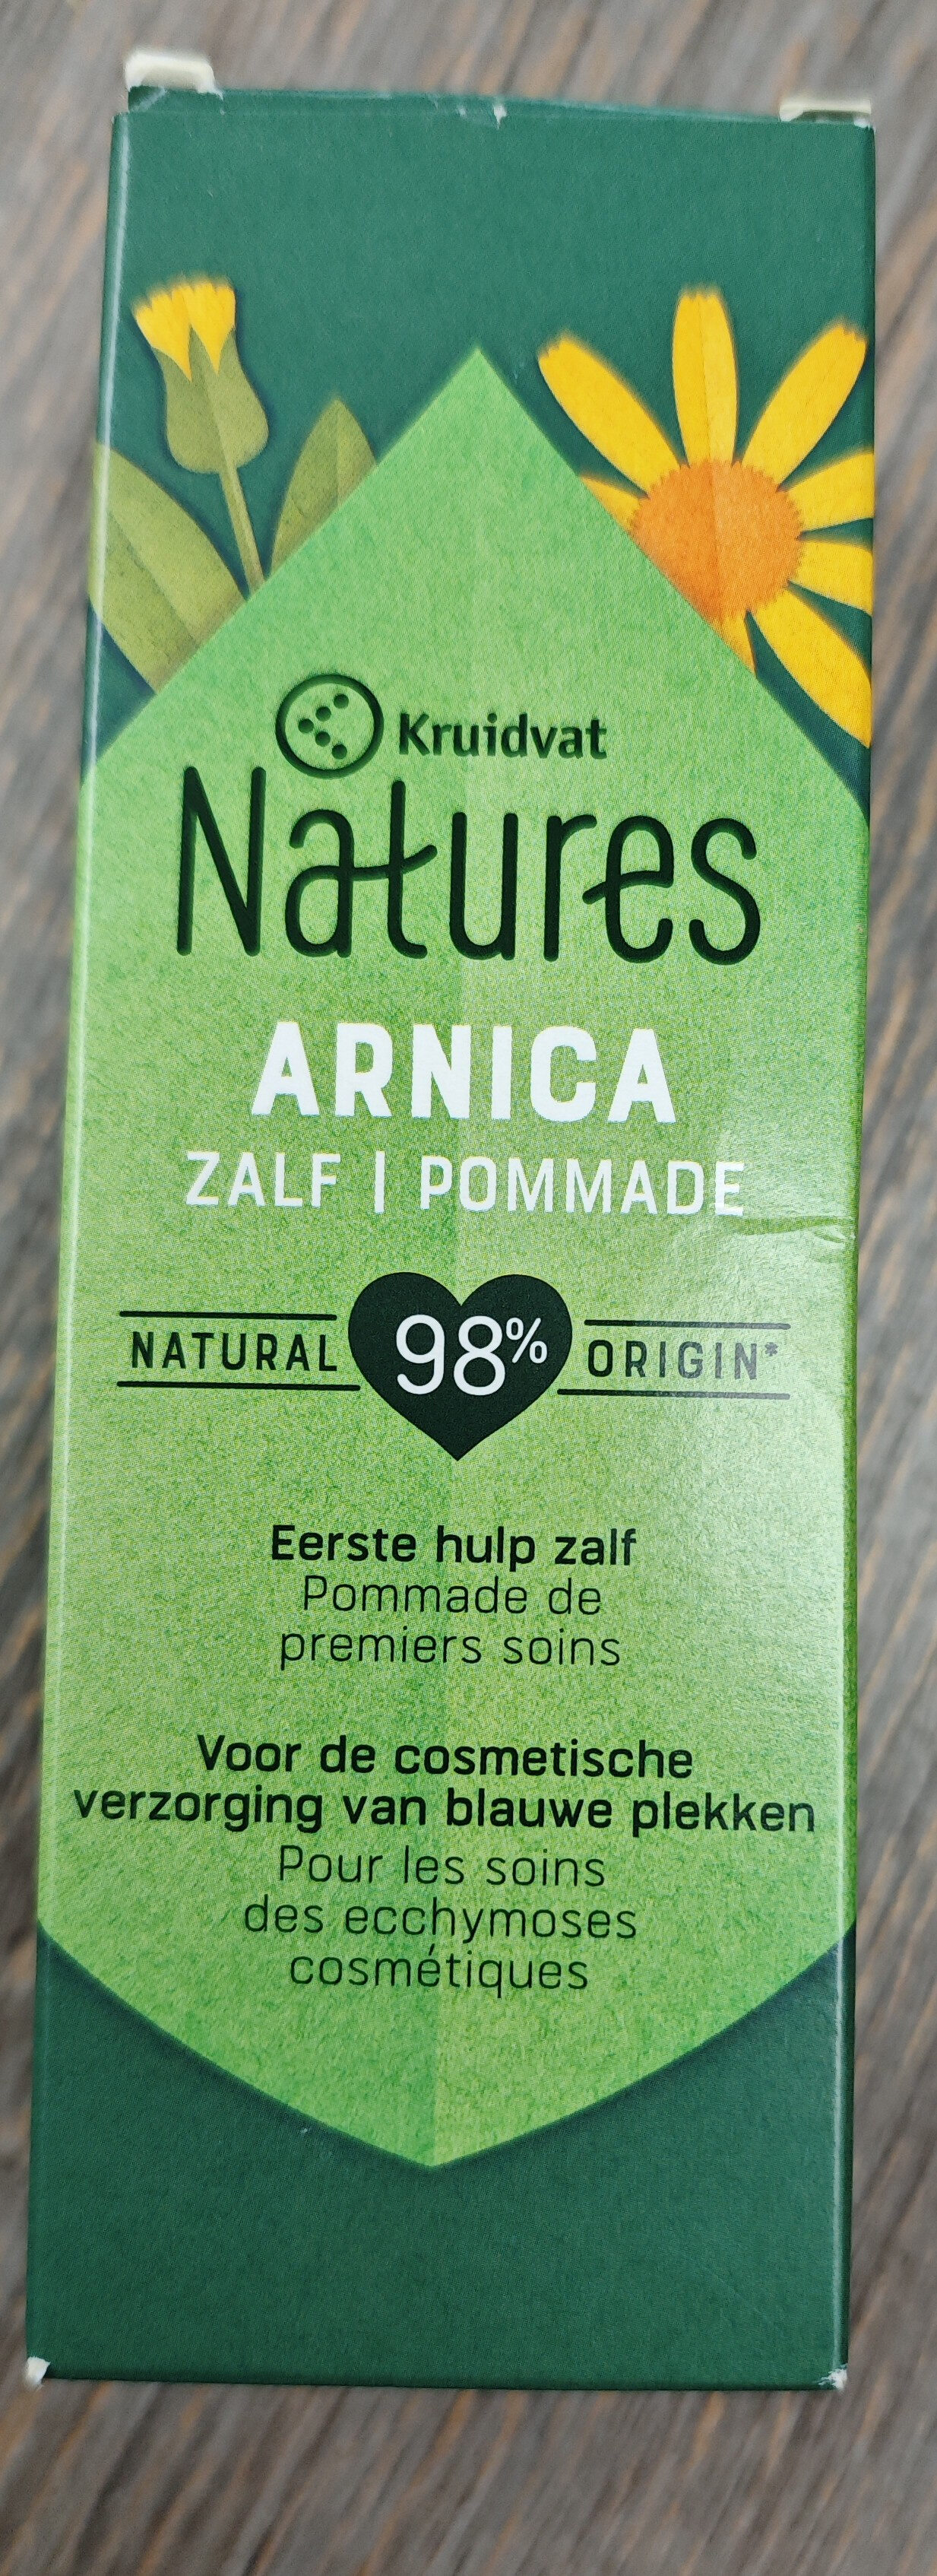 Kruidvat Natures Arnica - Produkt - fr